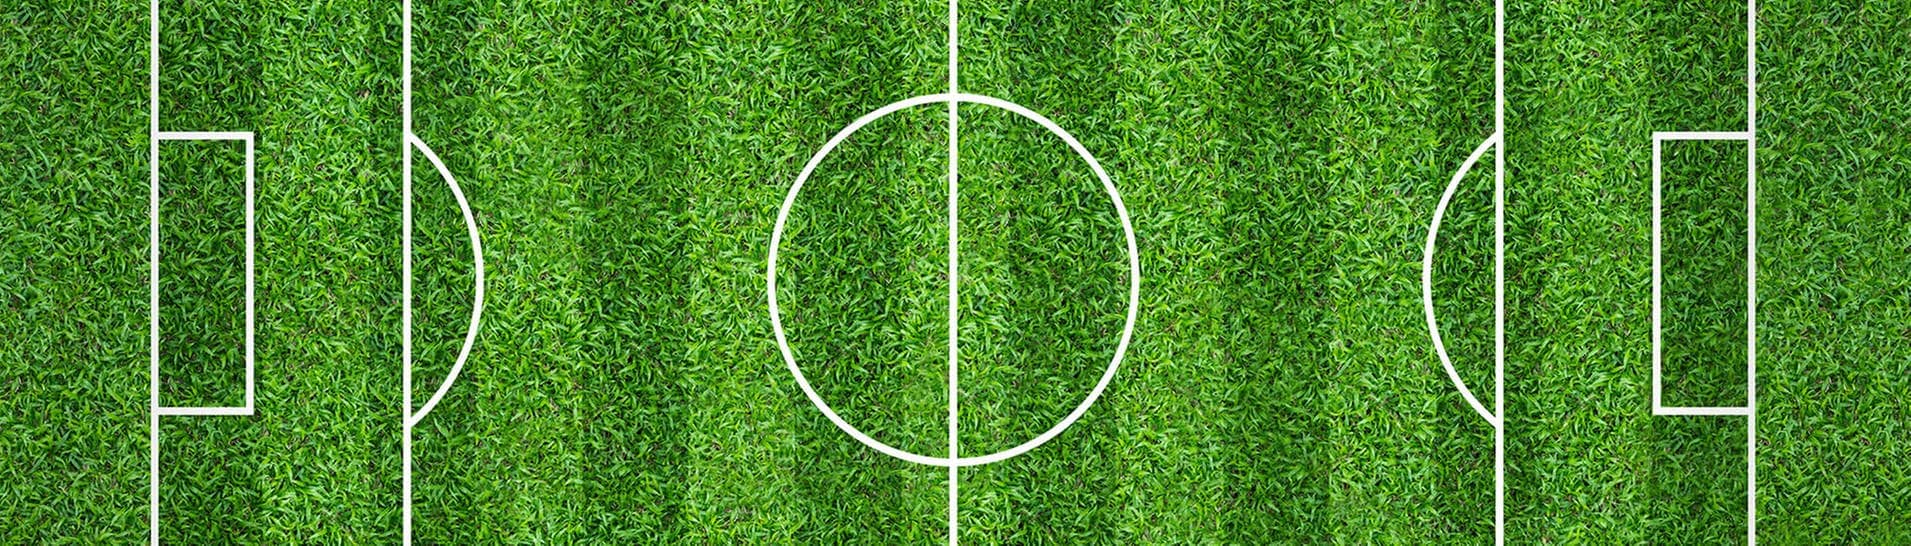 Fußballfeld mit Markierungen (Foto: Adobe Stock / praewpailin)